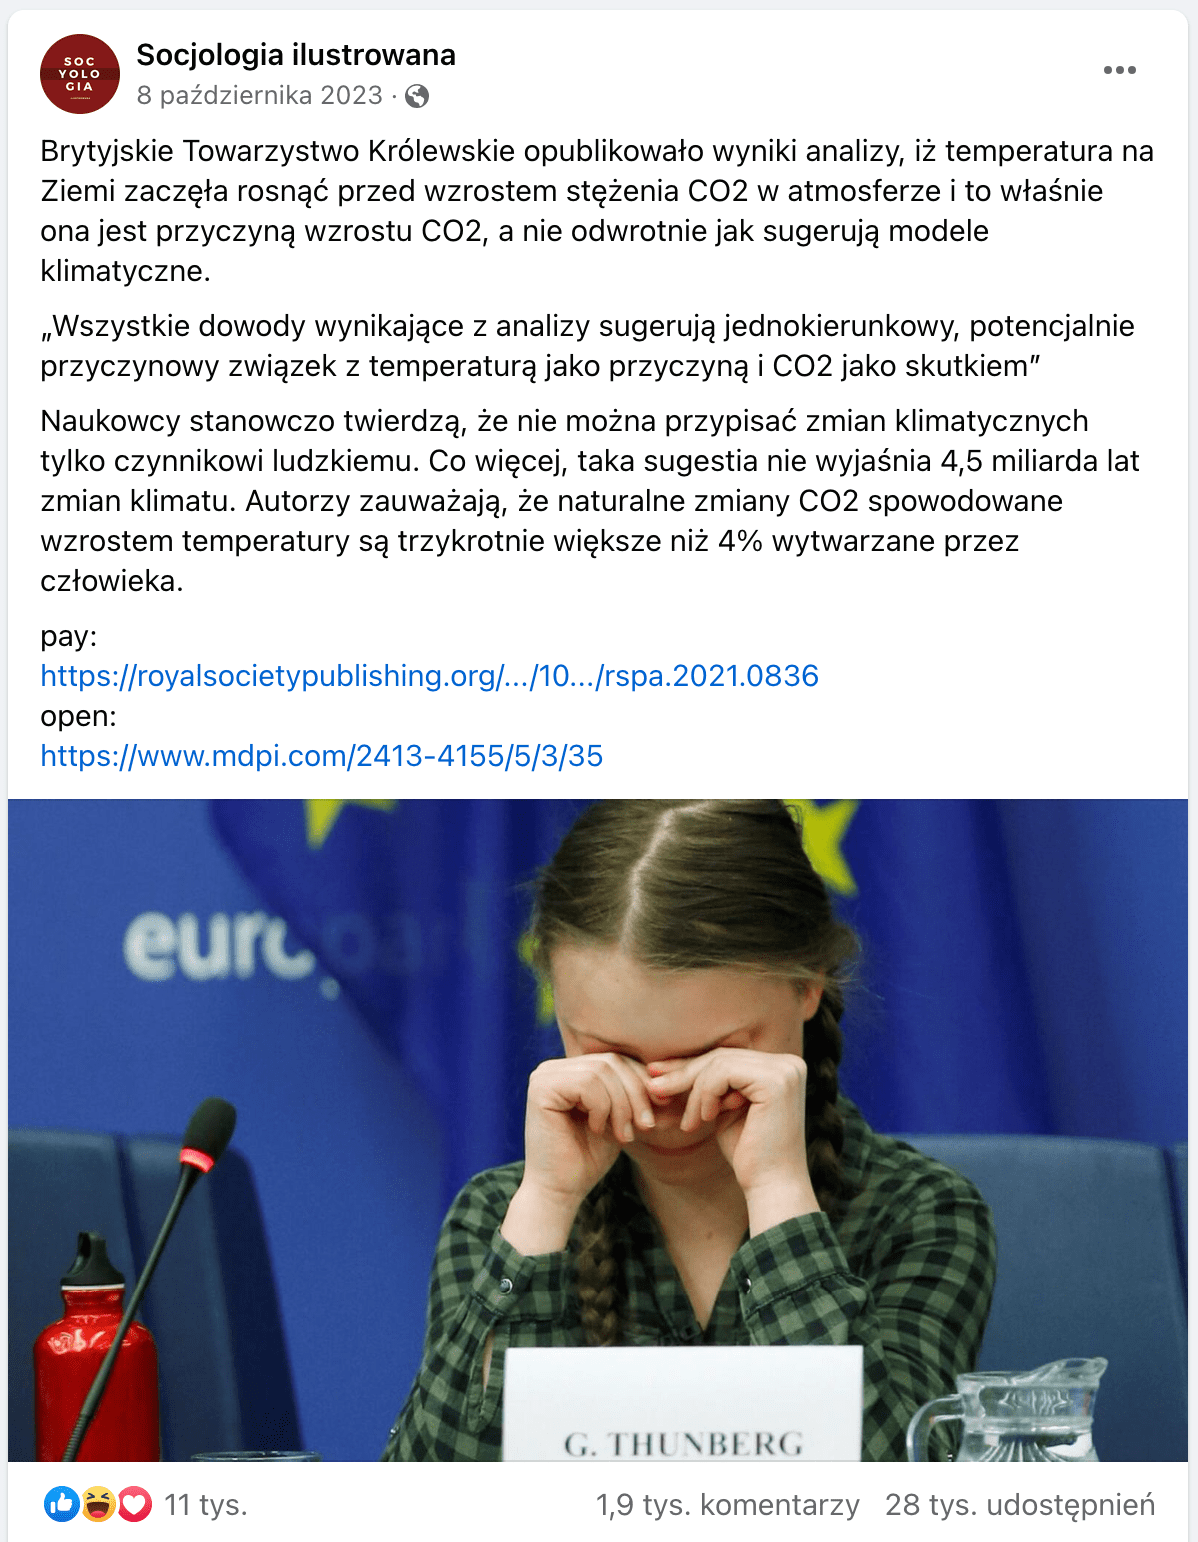 Zrzut ekranu posta na Facebooku. Dołączono do niego zdjęcie Grety Thunberg, która zasłania sobie oczy dłońmi: wygląda, jakby płakała. Młoda aktywistka ubrana jest w koszulę w czarno-zieloną kratę. Przed nią stoi mikrofon, dzbanek i wizytówka z jej imieniem. W tle znajduje się flaga Unii Europejskiej.